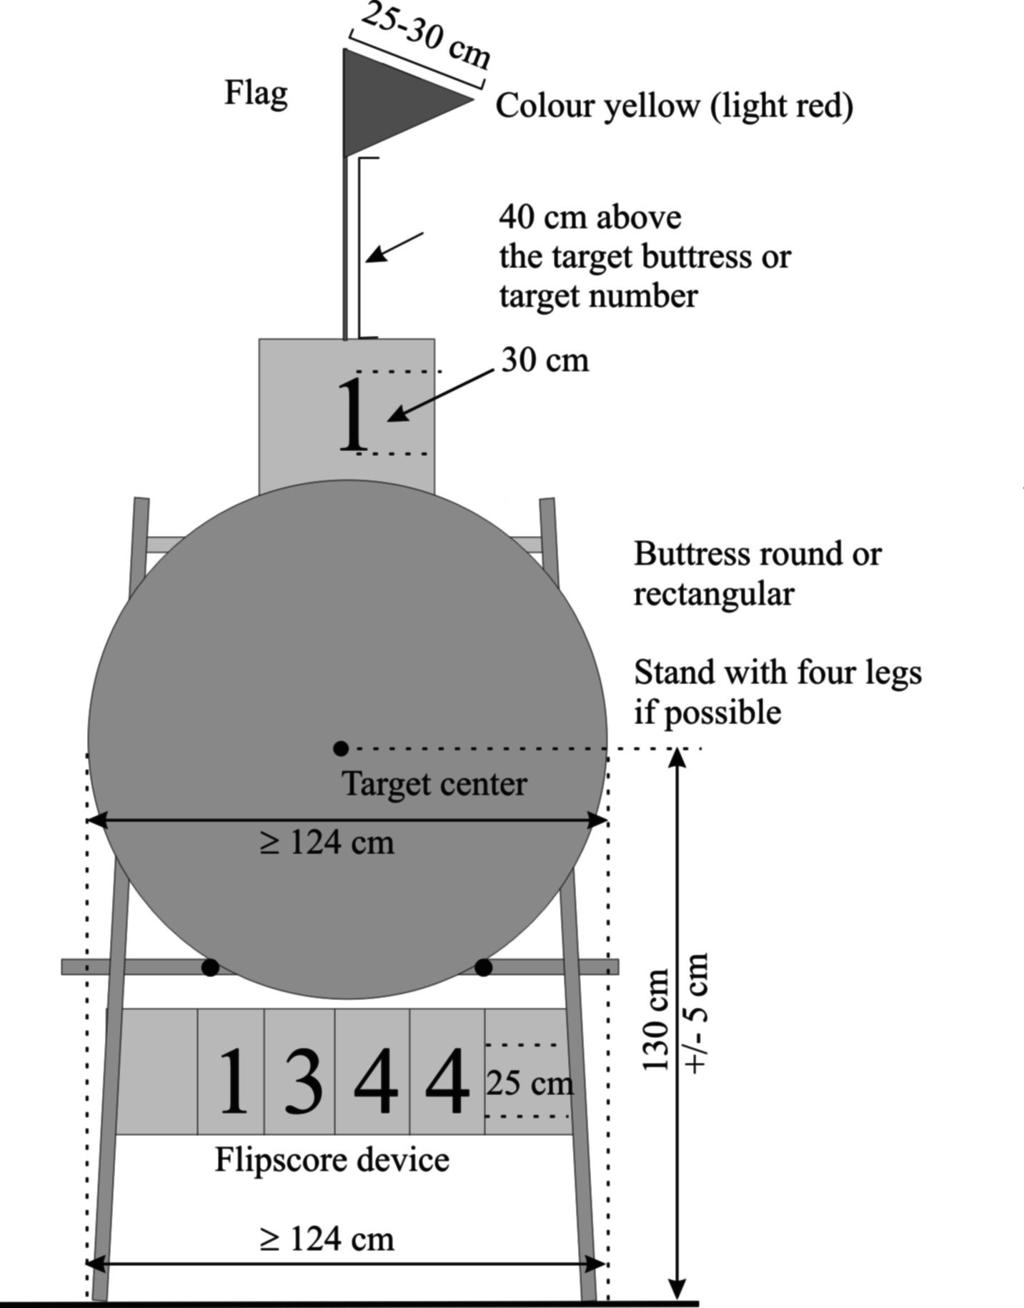 Image 4: Outdoor target butt set-up 4 x 5-10 rings blazoen